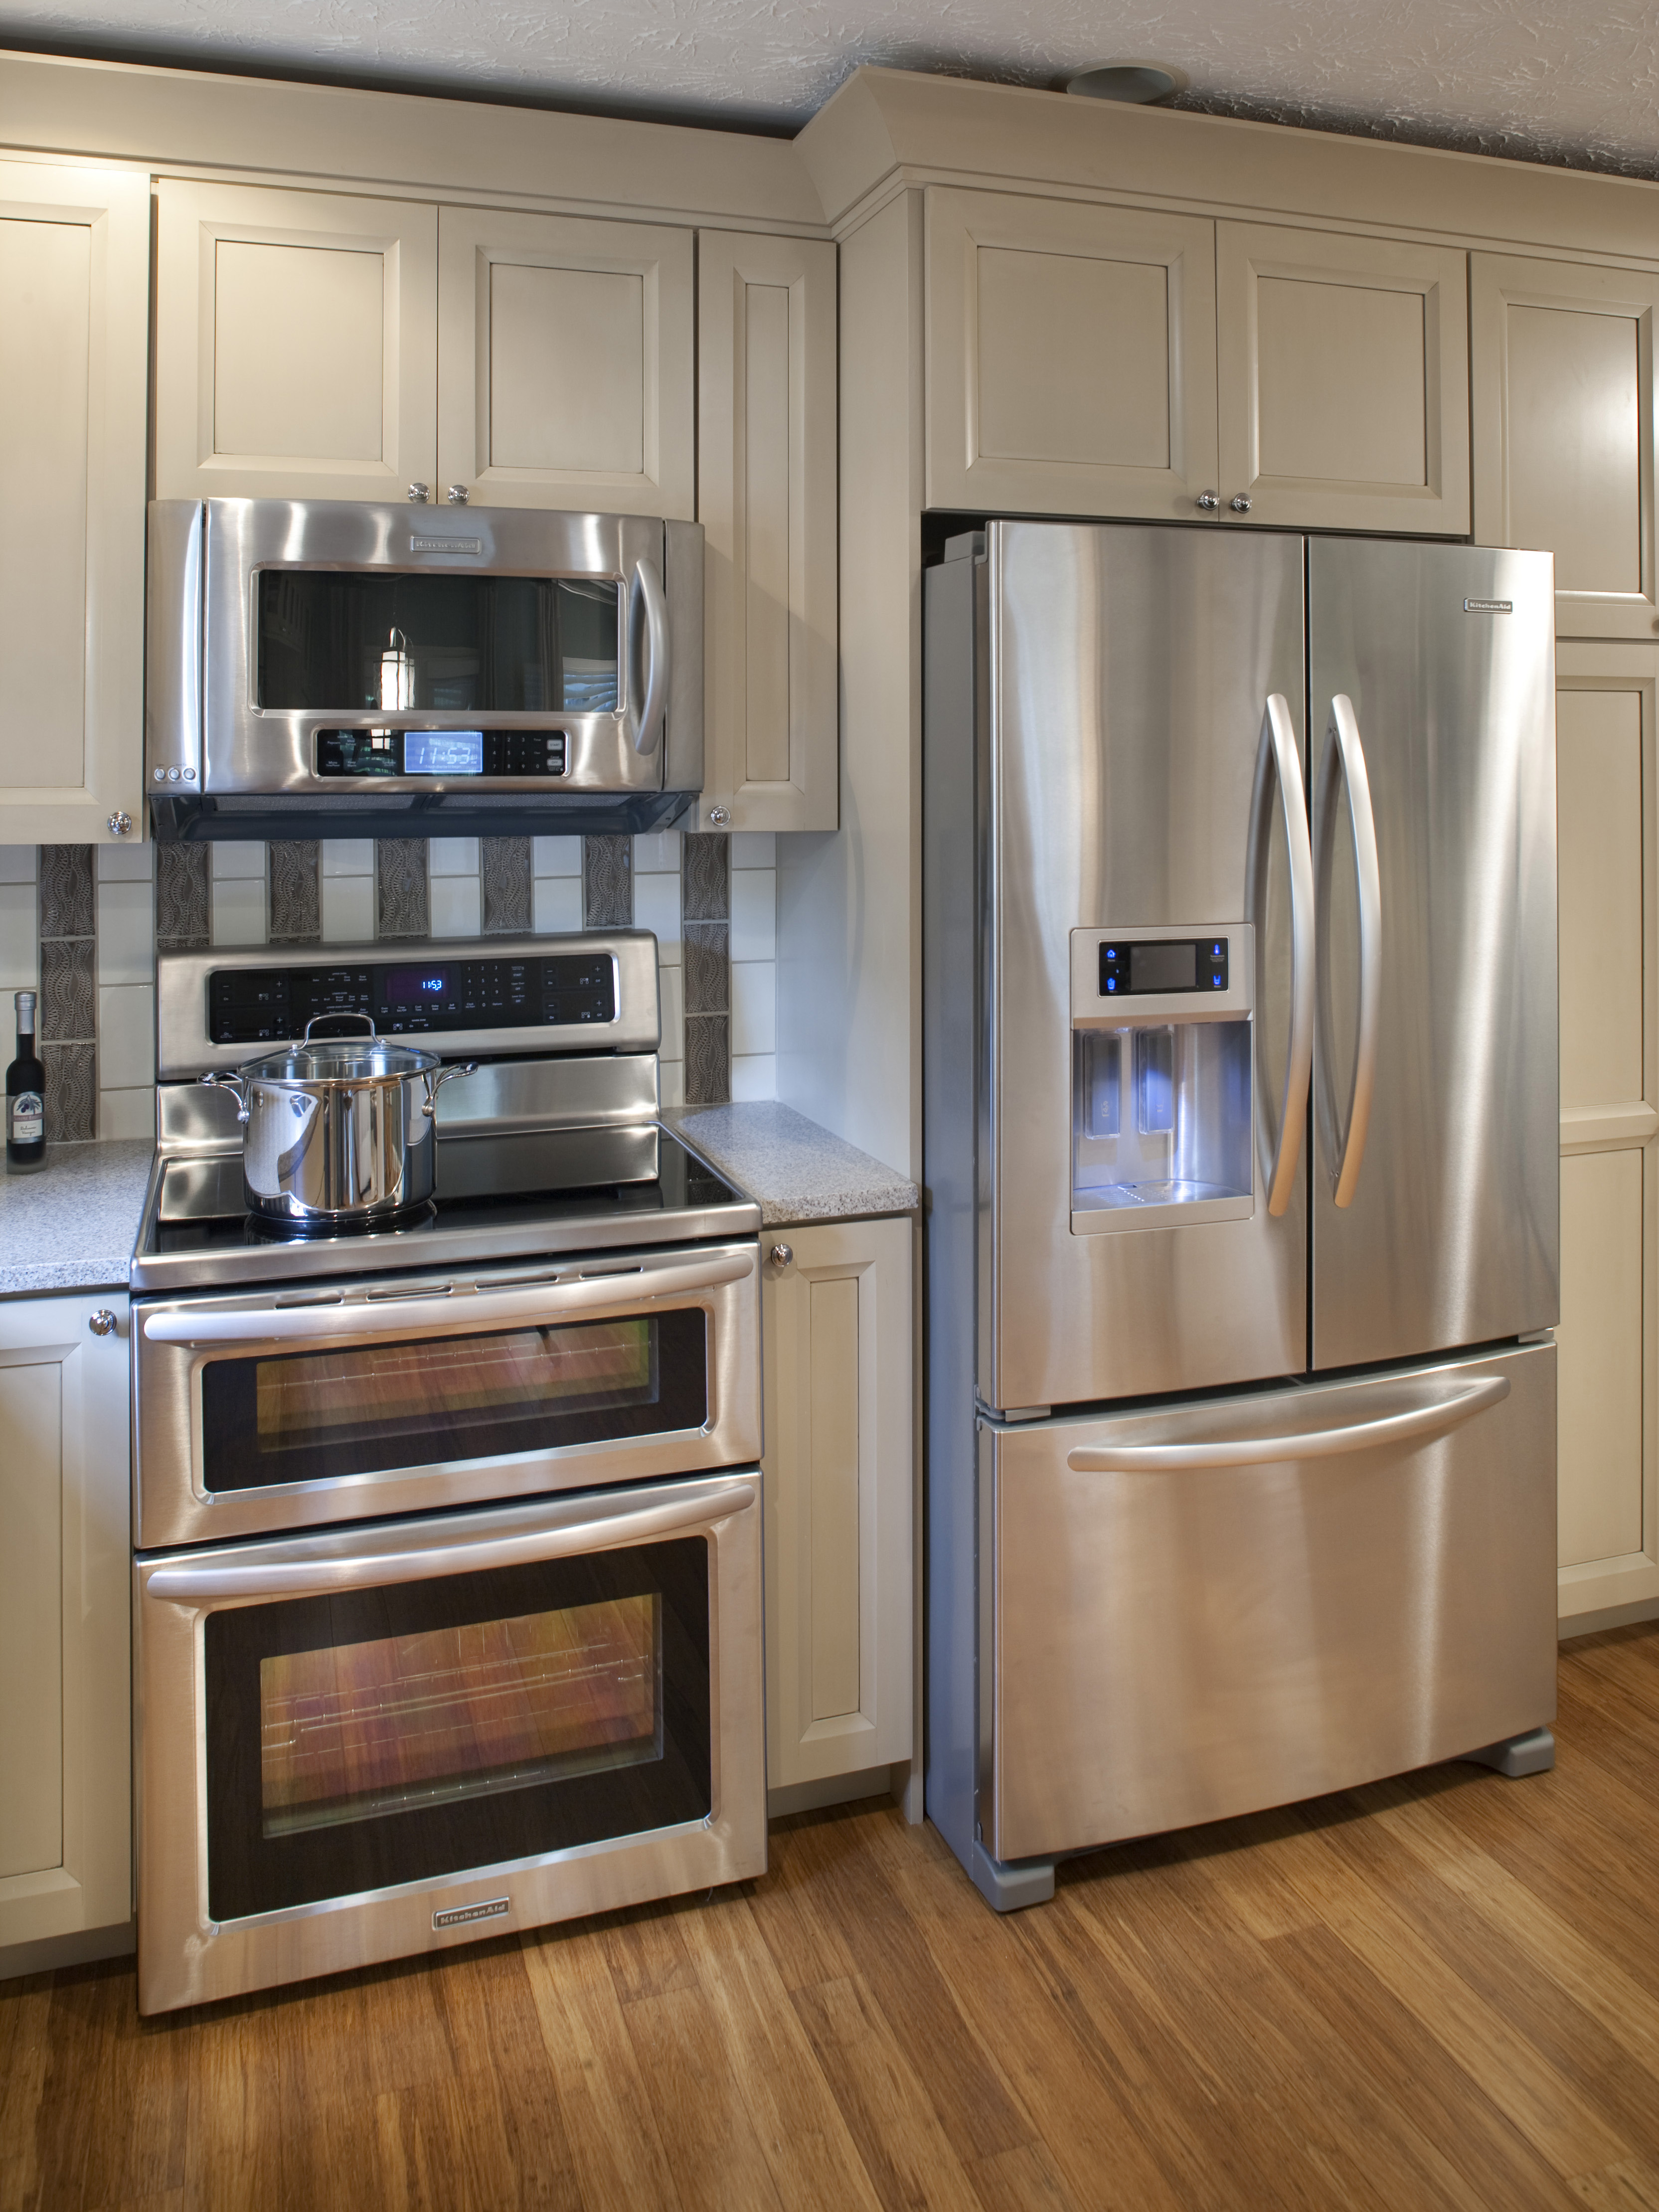 Дизайн кухни встроенной техникой. Холодильник 4-камерный Stainless Steel Kitchen Refrigerator 4 Doors. Встраиваемая бытовая техника для кухни Индезит. Кухня с встроенной бытовой техникой. Встроенная кухня с холодильником.